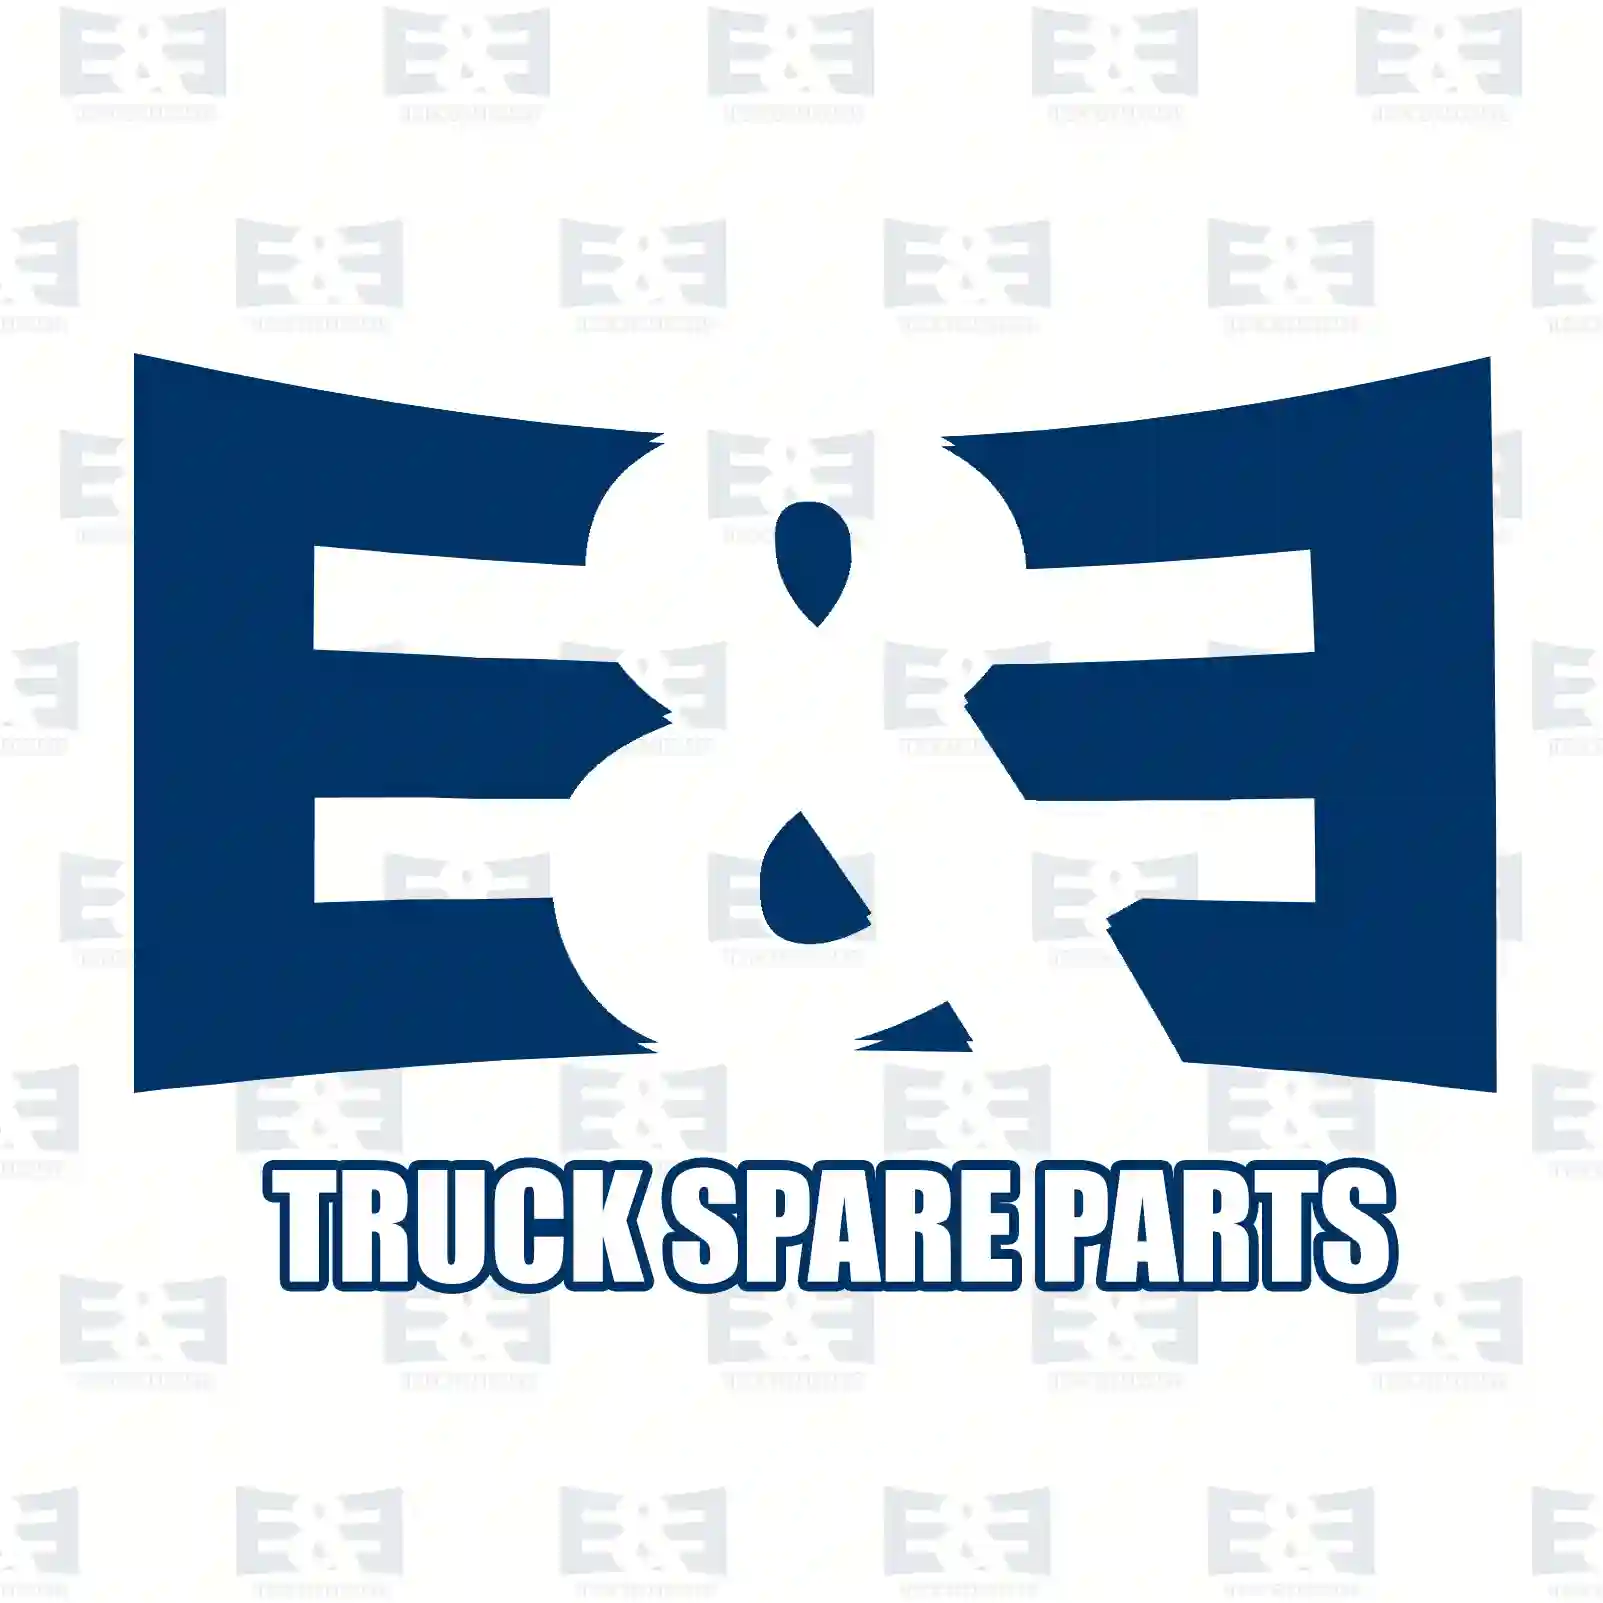 Brake disc, 2E2296272, 42471214, 500322079, 500349932, , , , , ||  2E2296272 E&E Truck Spare Parts | Truck Spare Parts, Auotomotive Spare Parts Brake disc, 2E2296272, 42471214, 500322079, 500349932, , , , , ||  2E2296272 E&E Truck Spare Parts | Truck Spare Parts, Auotomotive Spare Parts